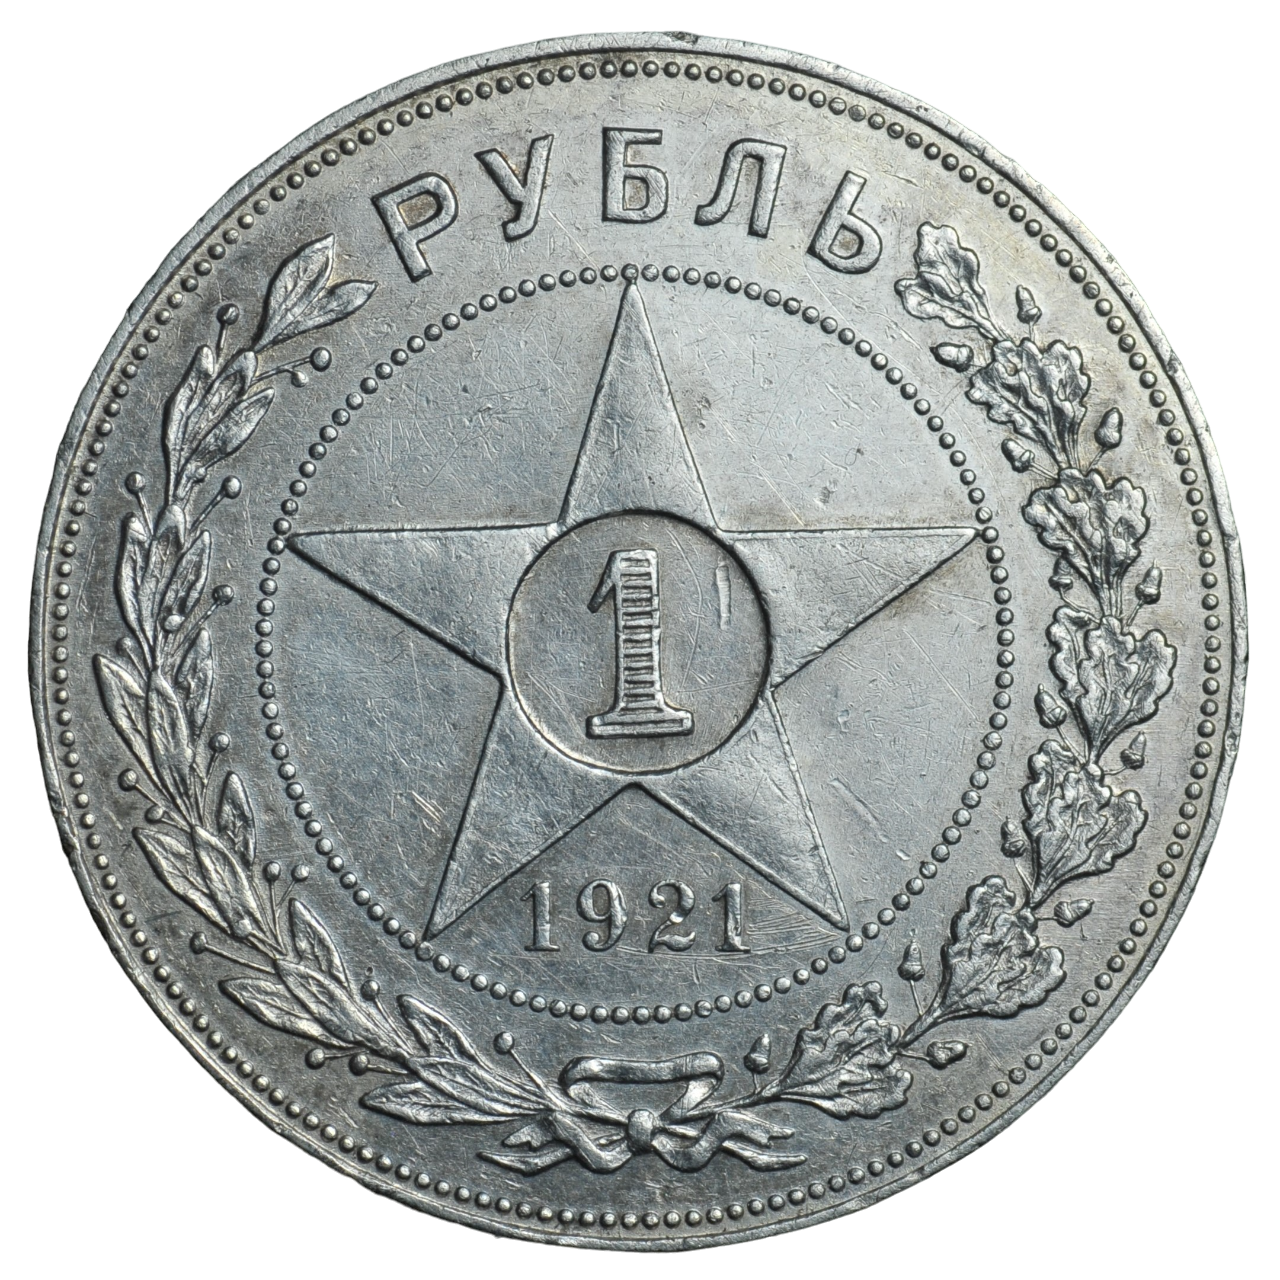 Редкая монета Советской России 1 рубль 1921 года